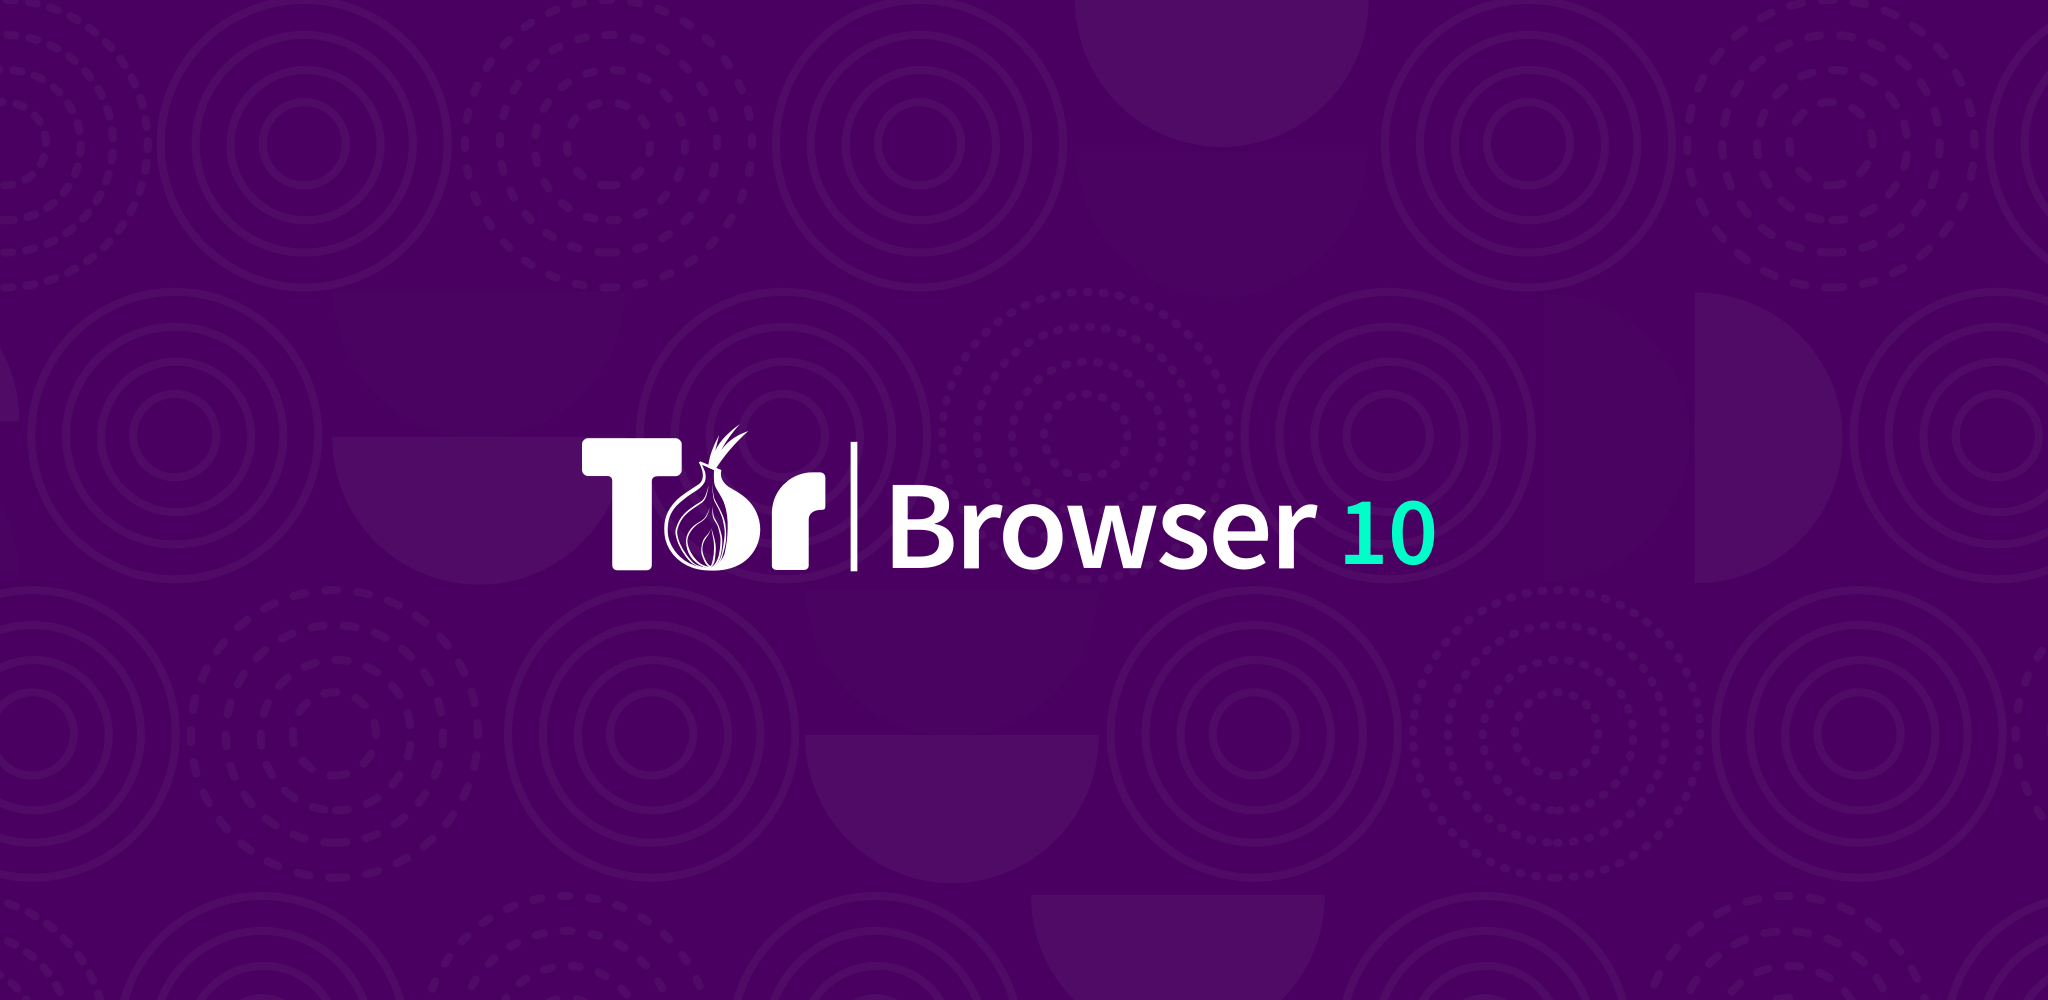 Tor browser for freebsd mega tor browser links mega